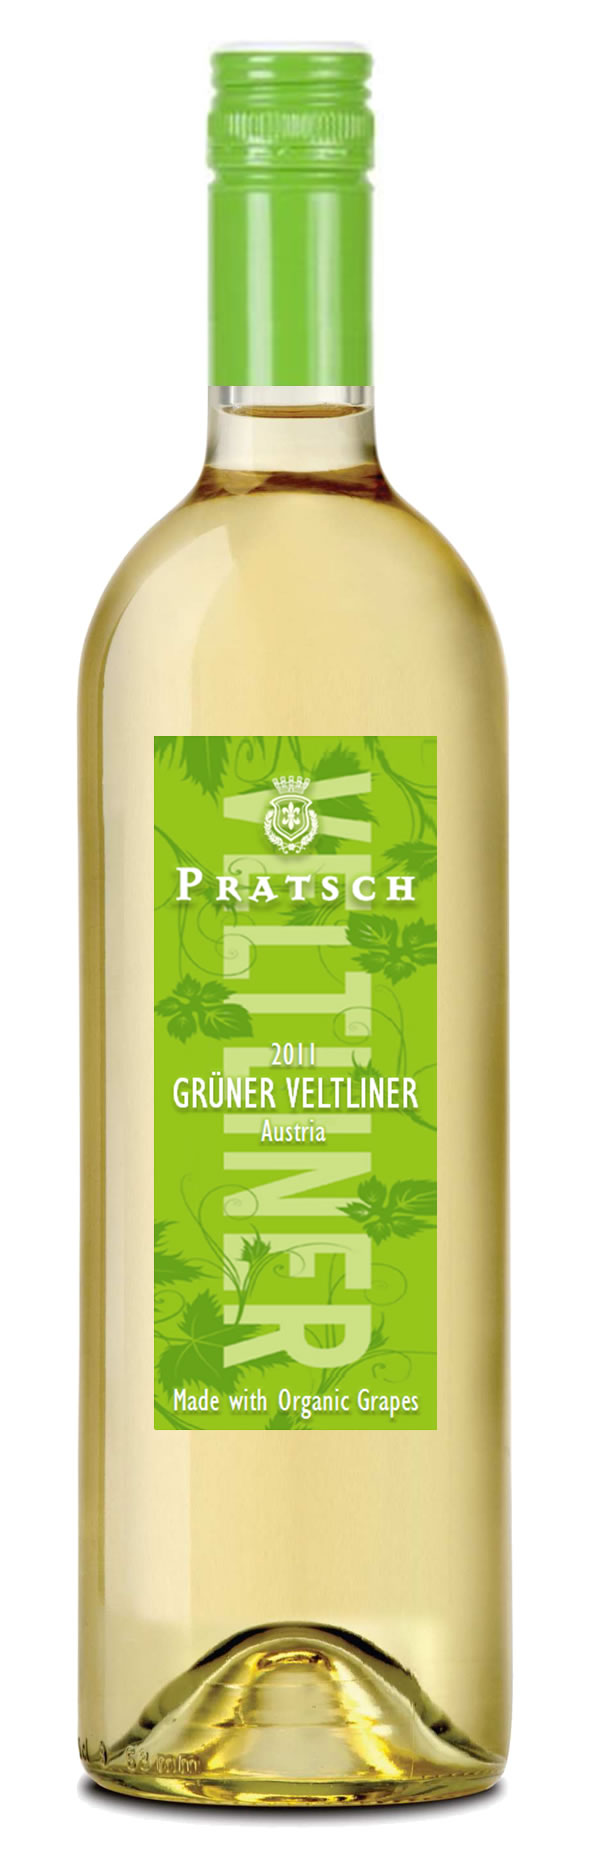 Pratsch Gruner Veltliner 2019 750ml